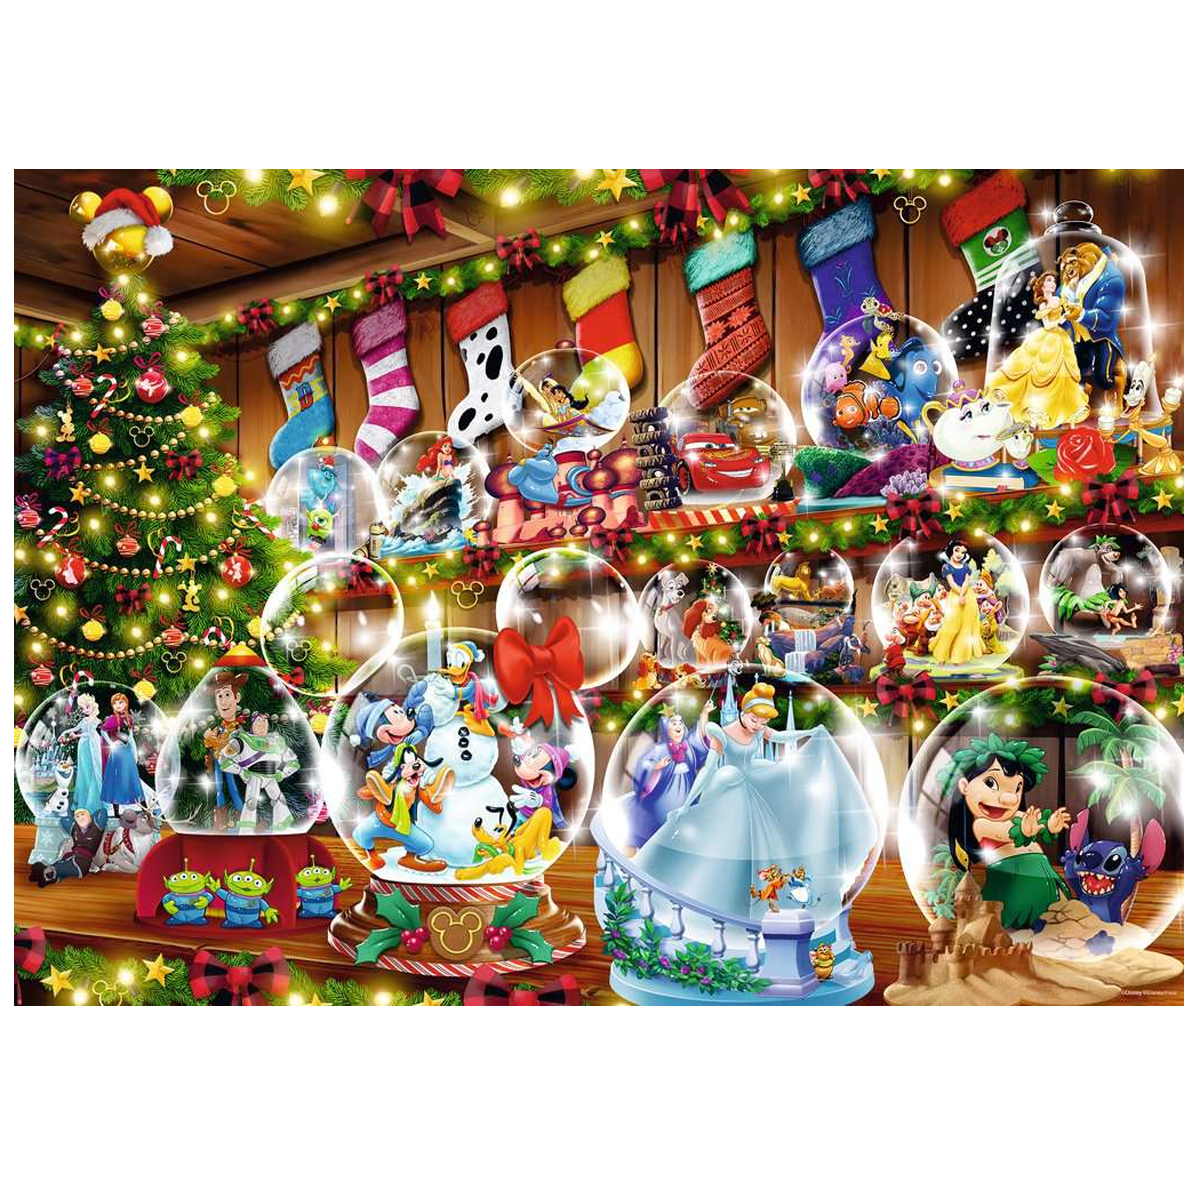 Comprar Ravensburger puzzle 1000 piezas Navidad Disney 16772